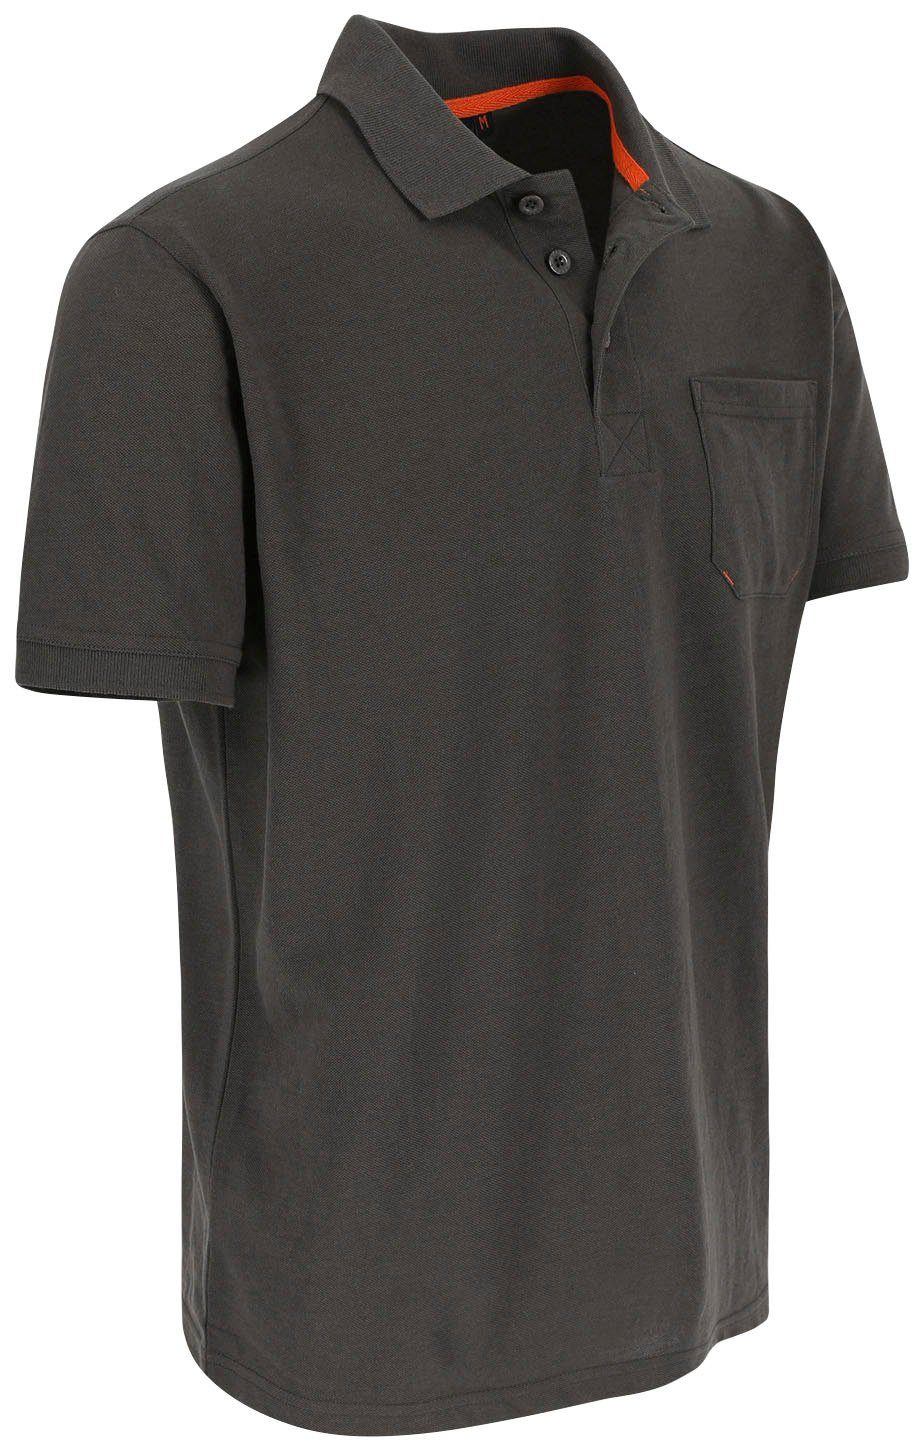 1 verschiedene Herock Leo Poloshirt Farben Polohemd Kurzärmlig grau Brusttasche, Bündchen, Rippstrick-Kragen und